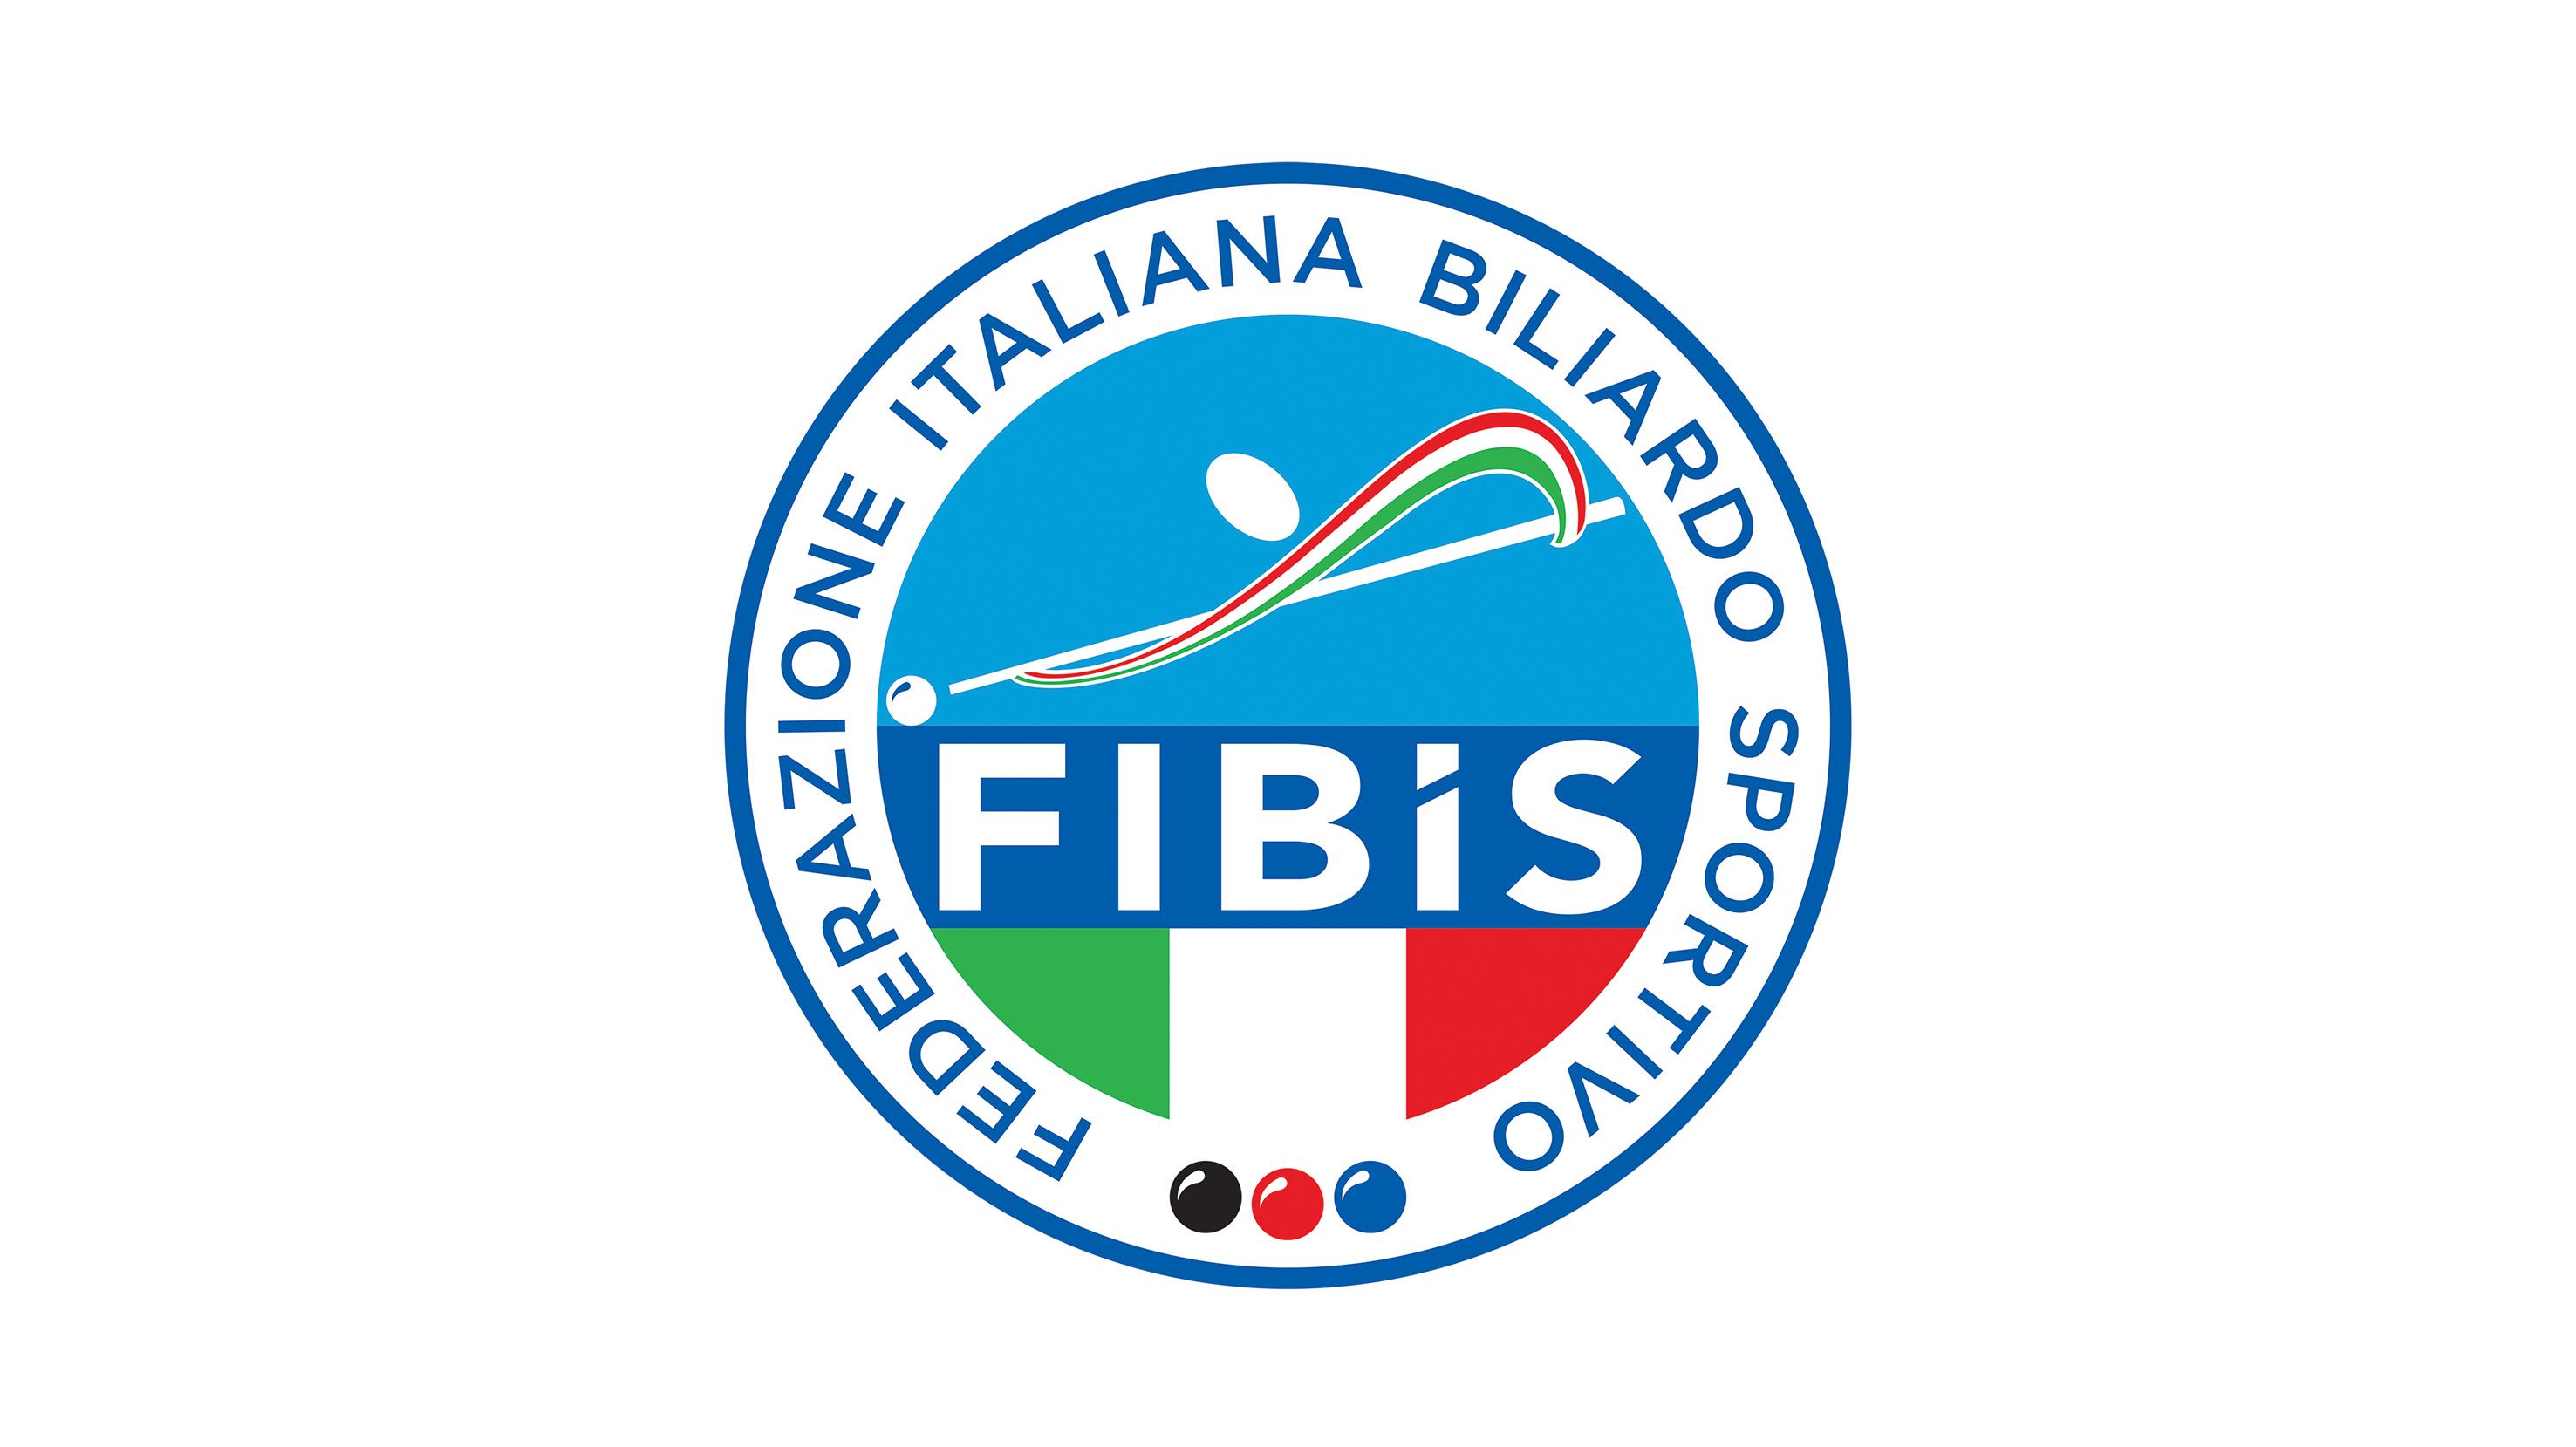 Approvato il Bilancio Consuntivo FIBIS 2019 